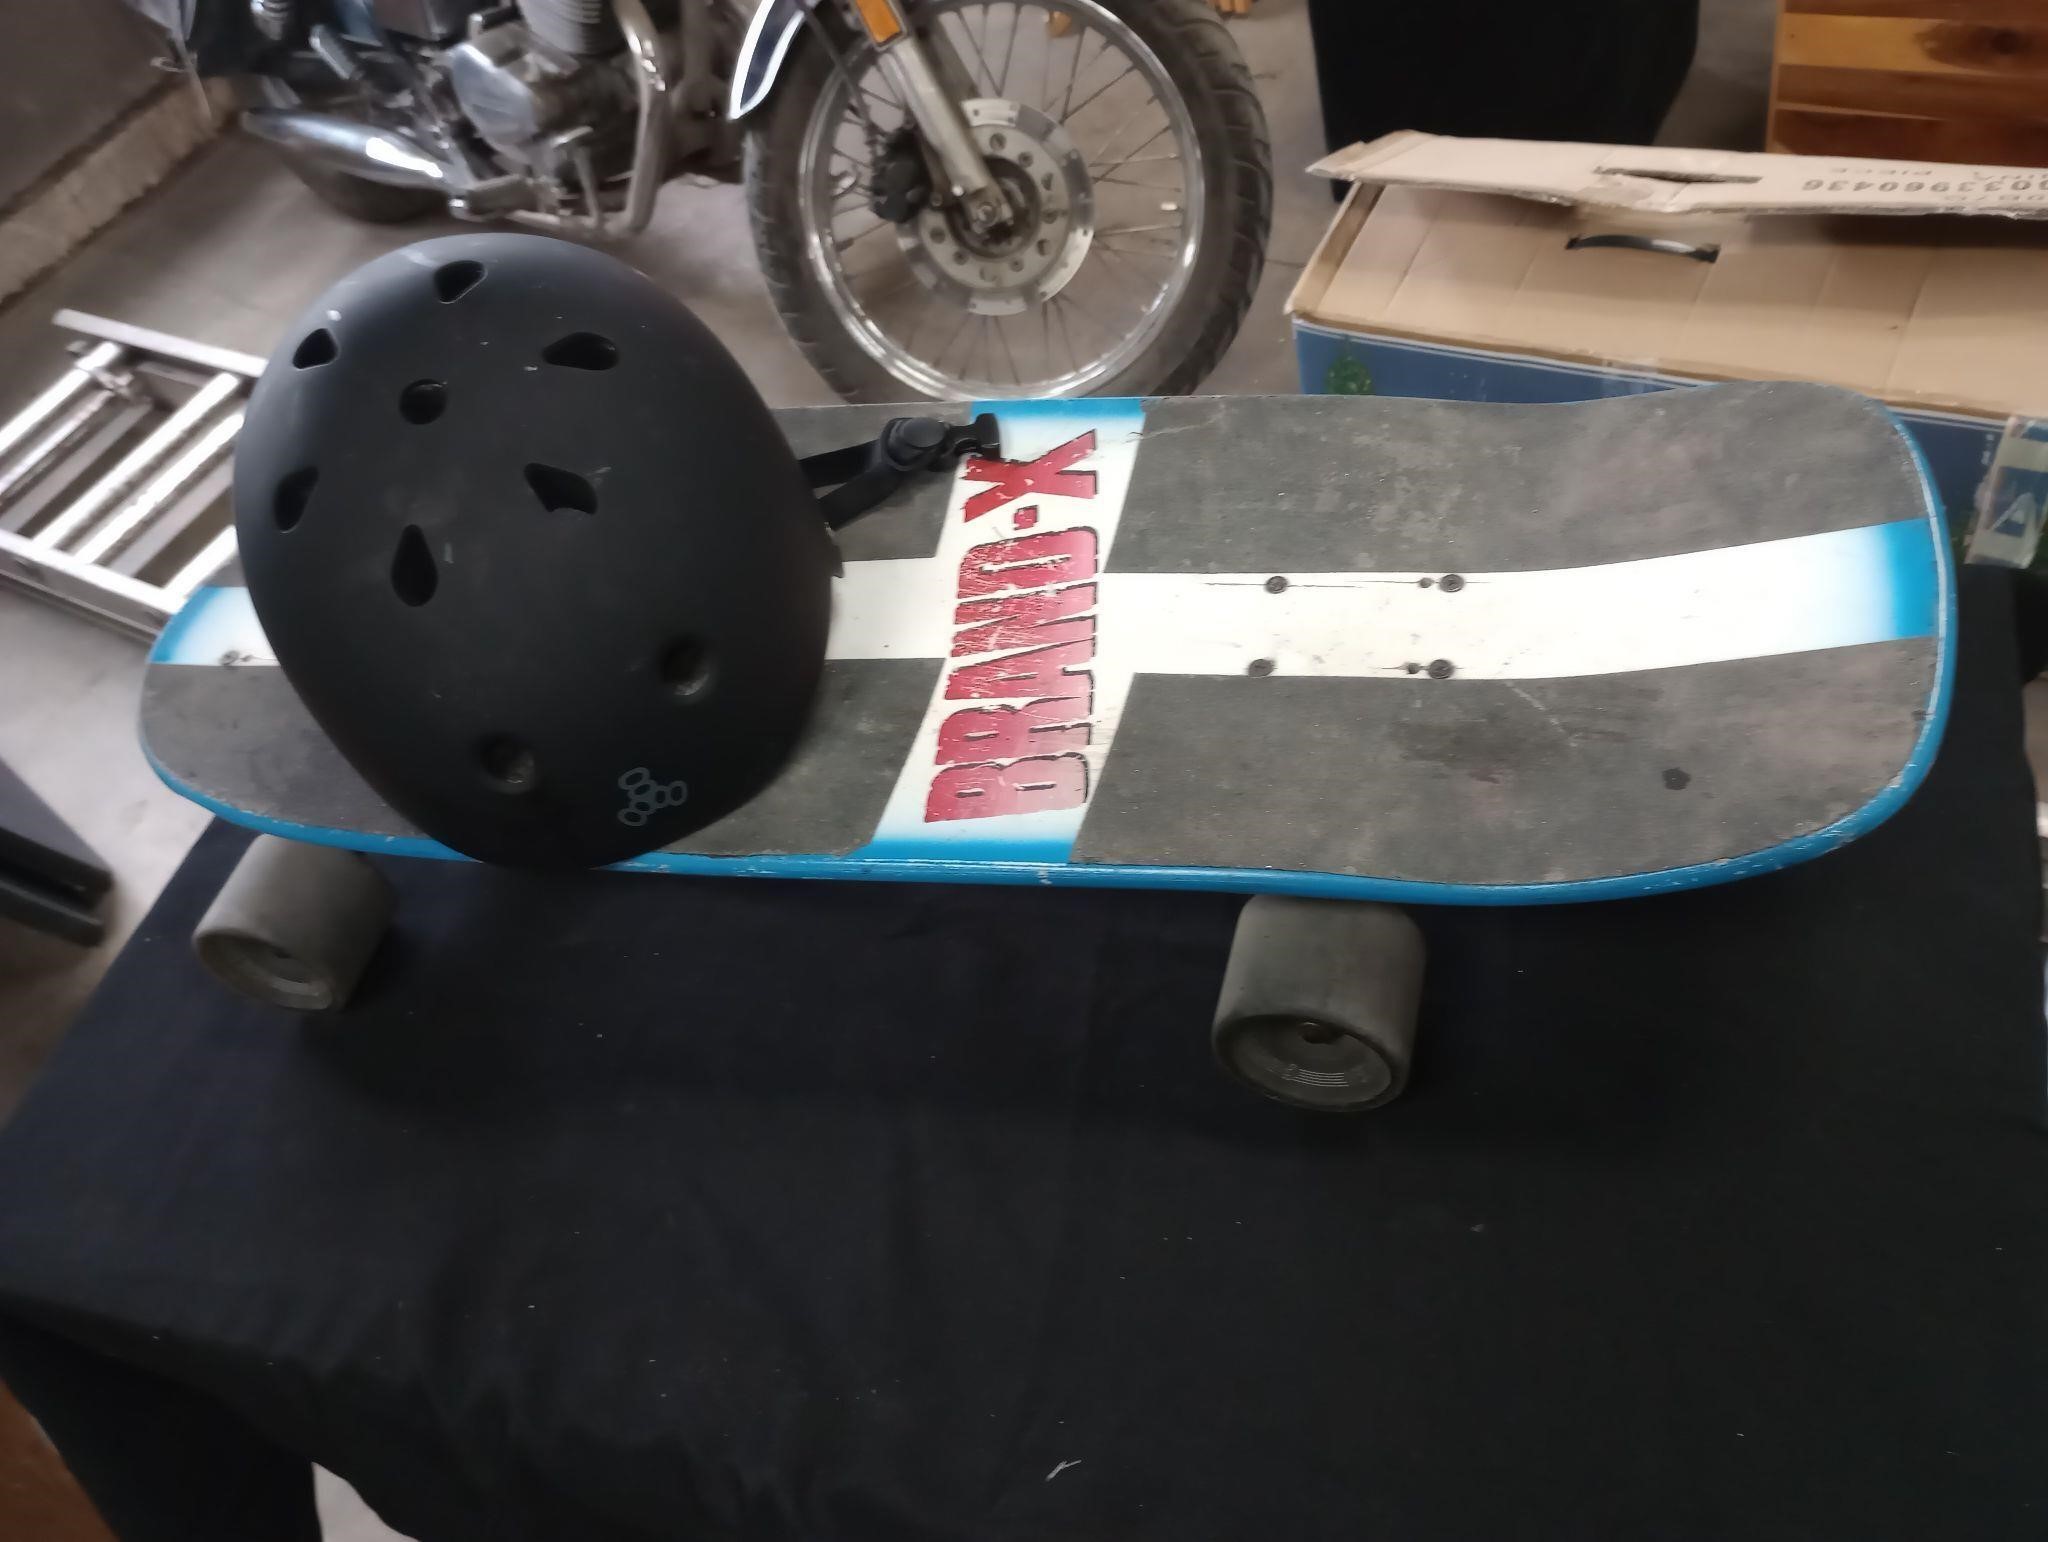 Skateboard/helmet